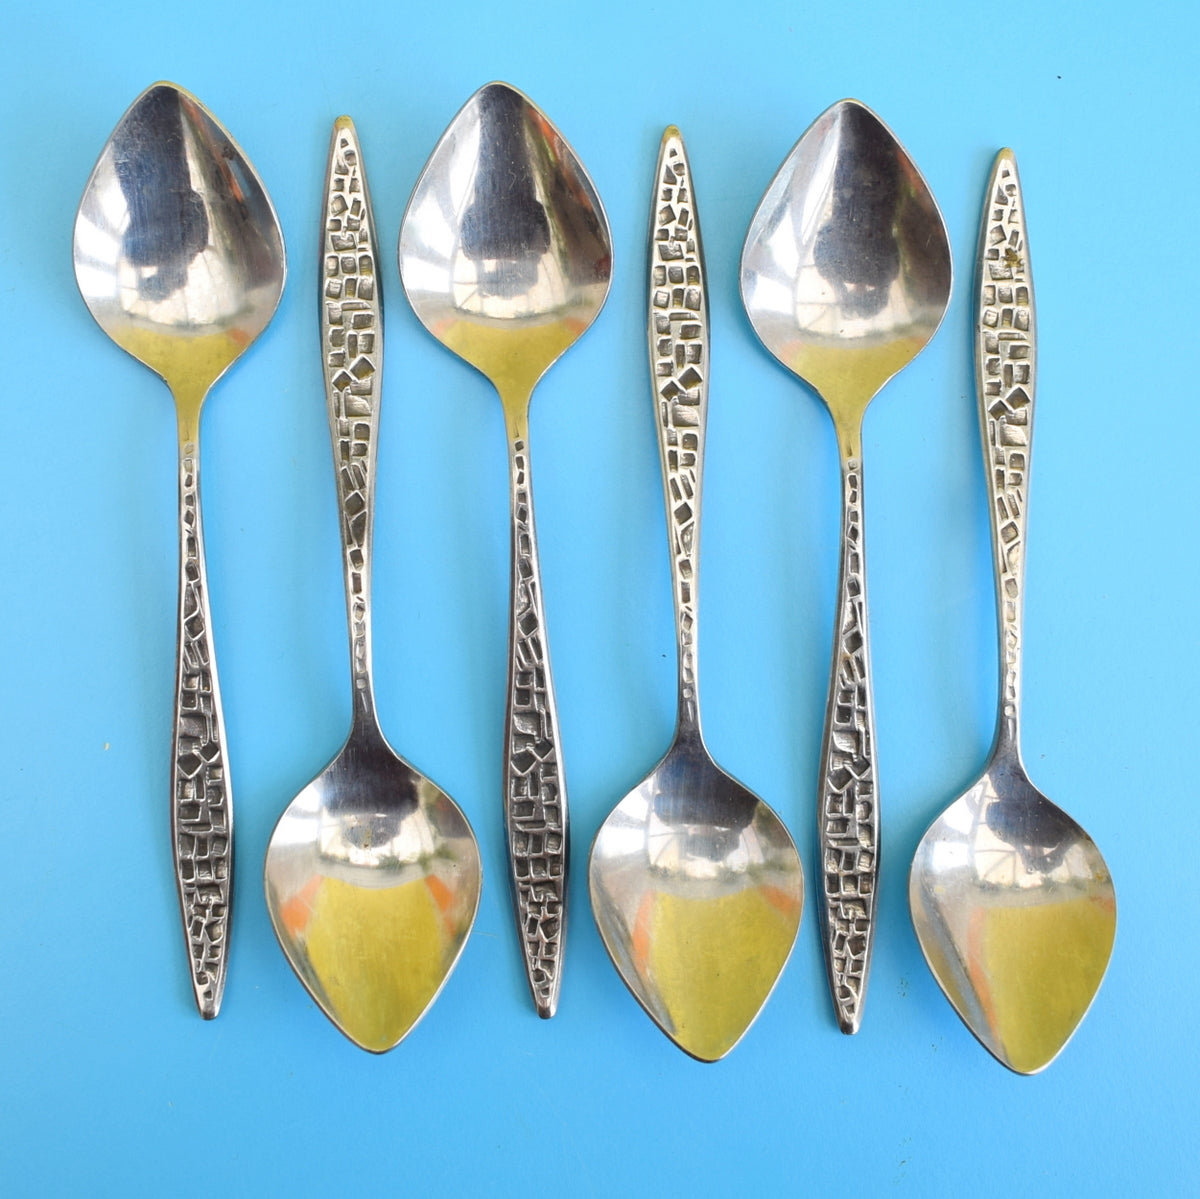 Vintage 1960s Viners Mosaic Cutlery - Spoons